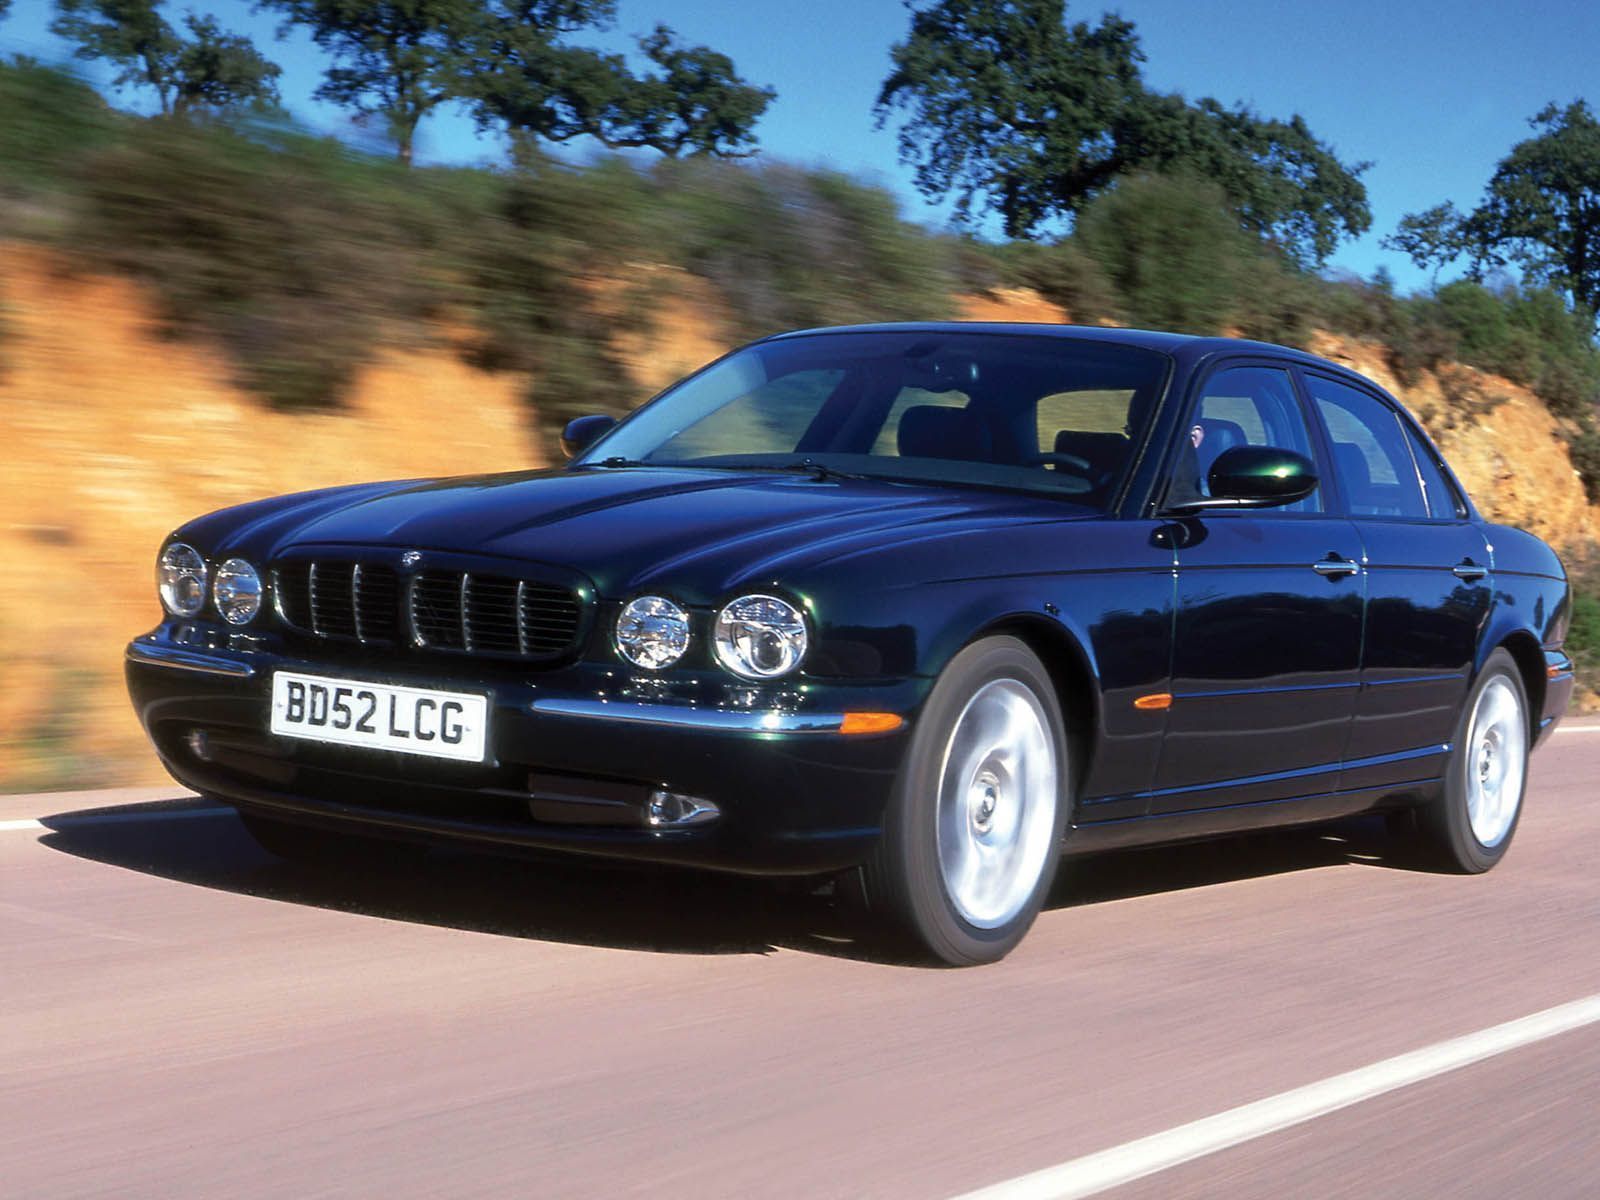 2005 Jaguar XJ LWB